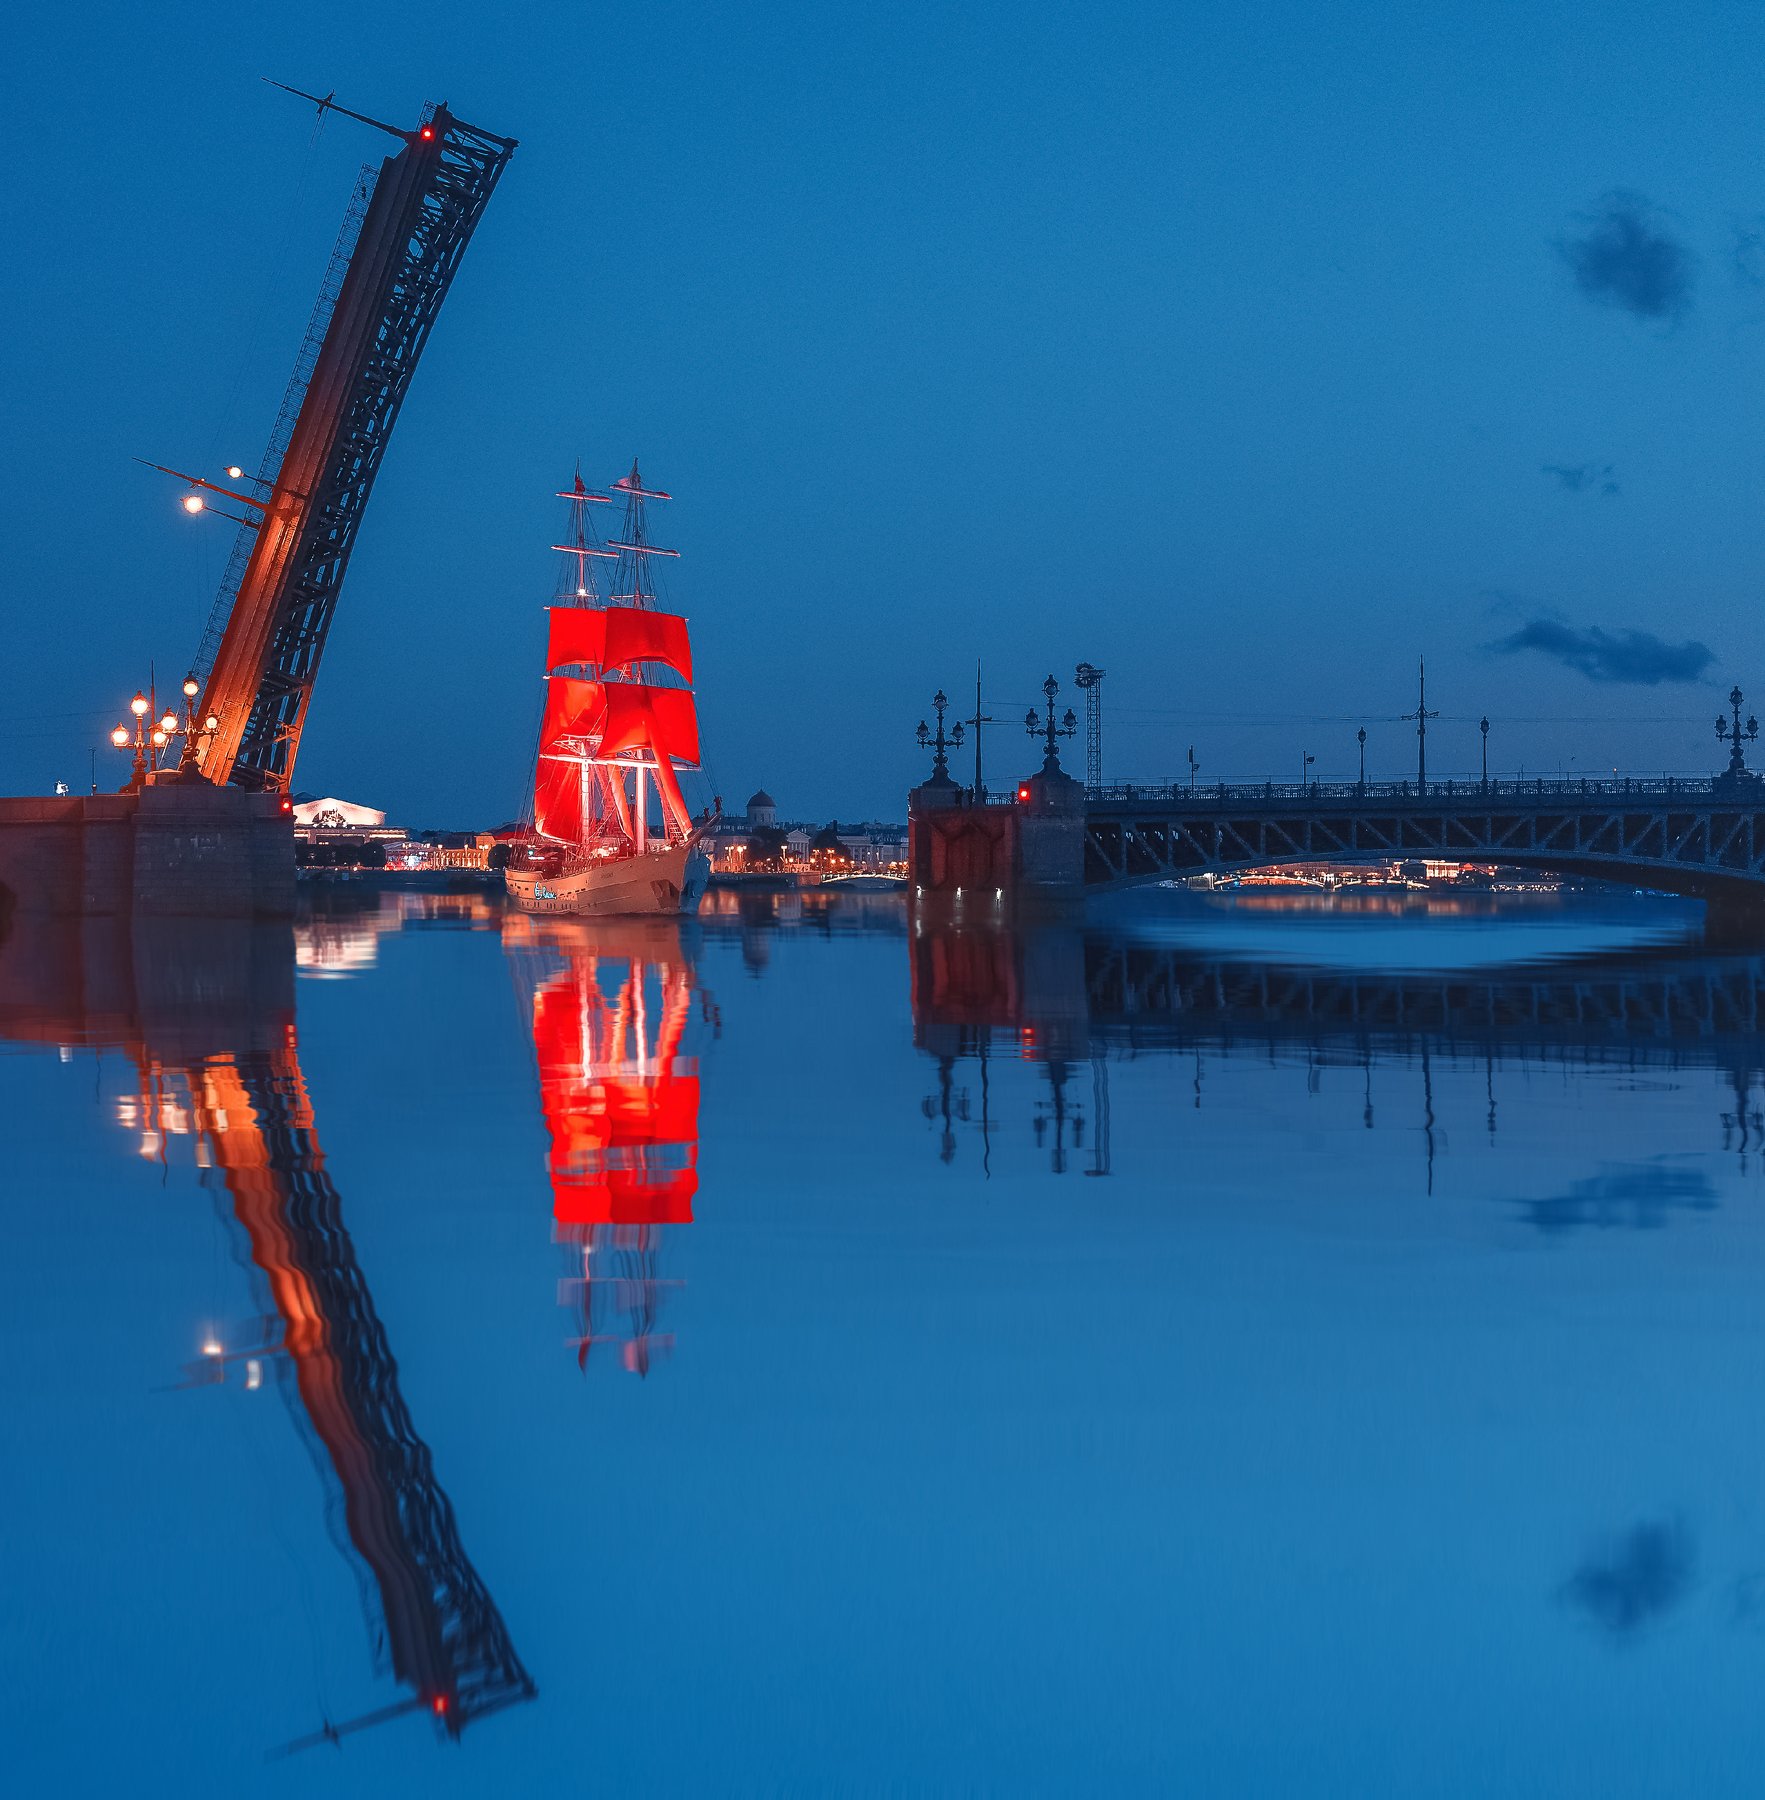 троицкий мост, отражение, алые паруса, кораболь, санкт-петербург, питер, Анастасия Мазурева